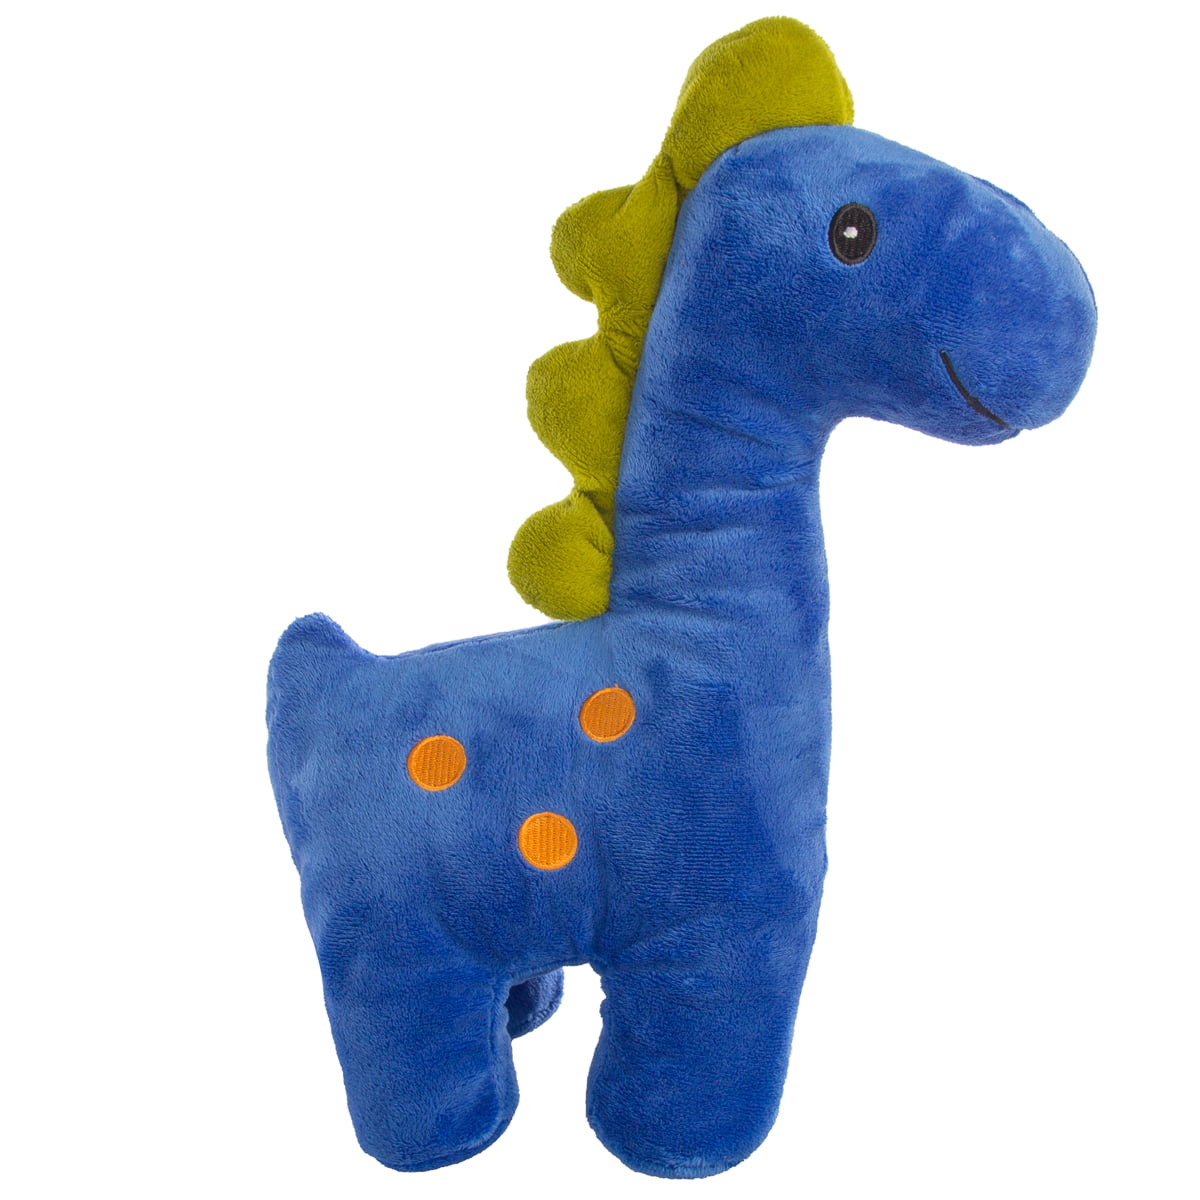 cute stuffed dinosaur